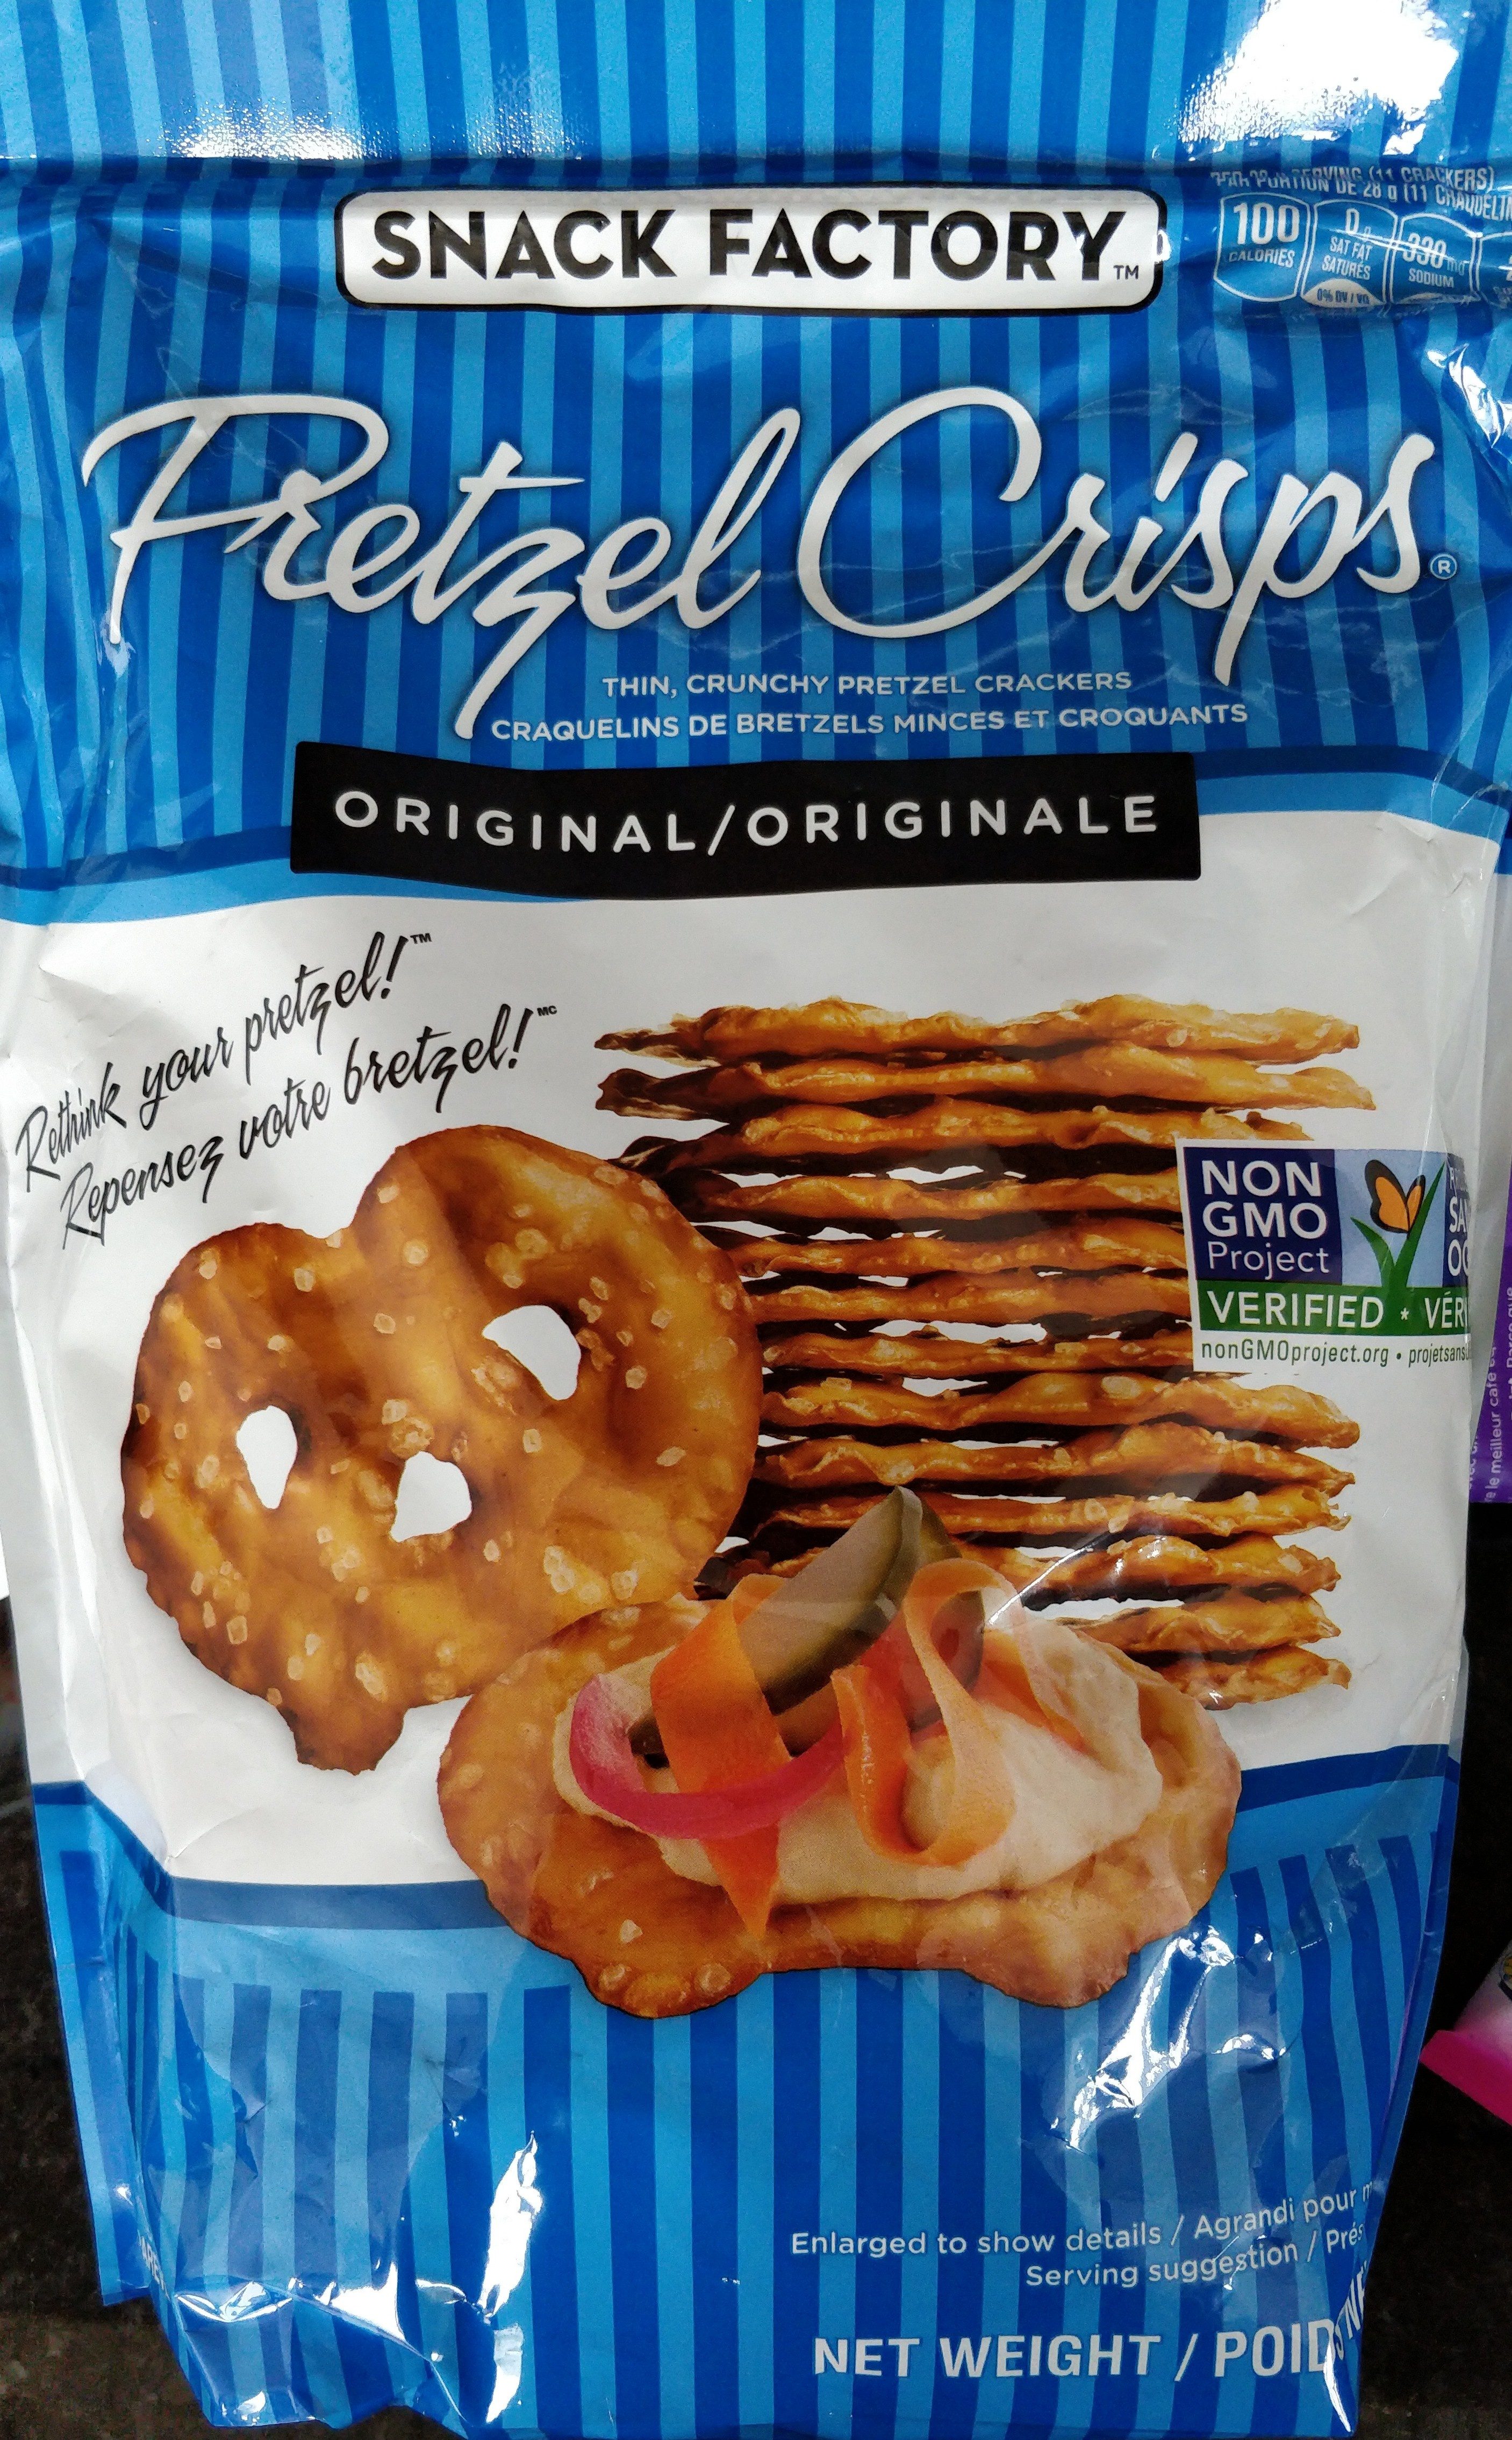 Snack factory pretzel crisps crackers original - Product - en